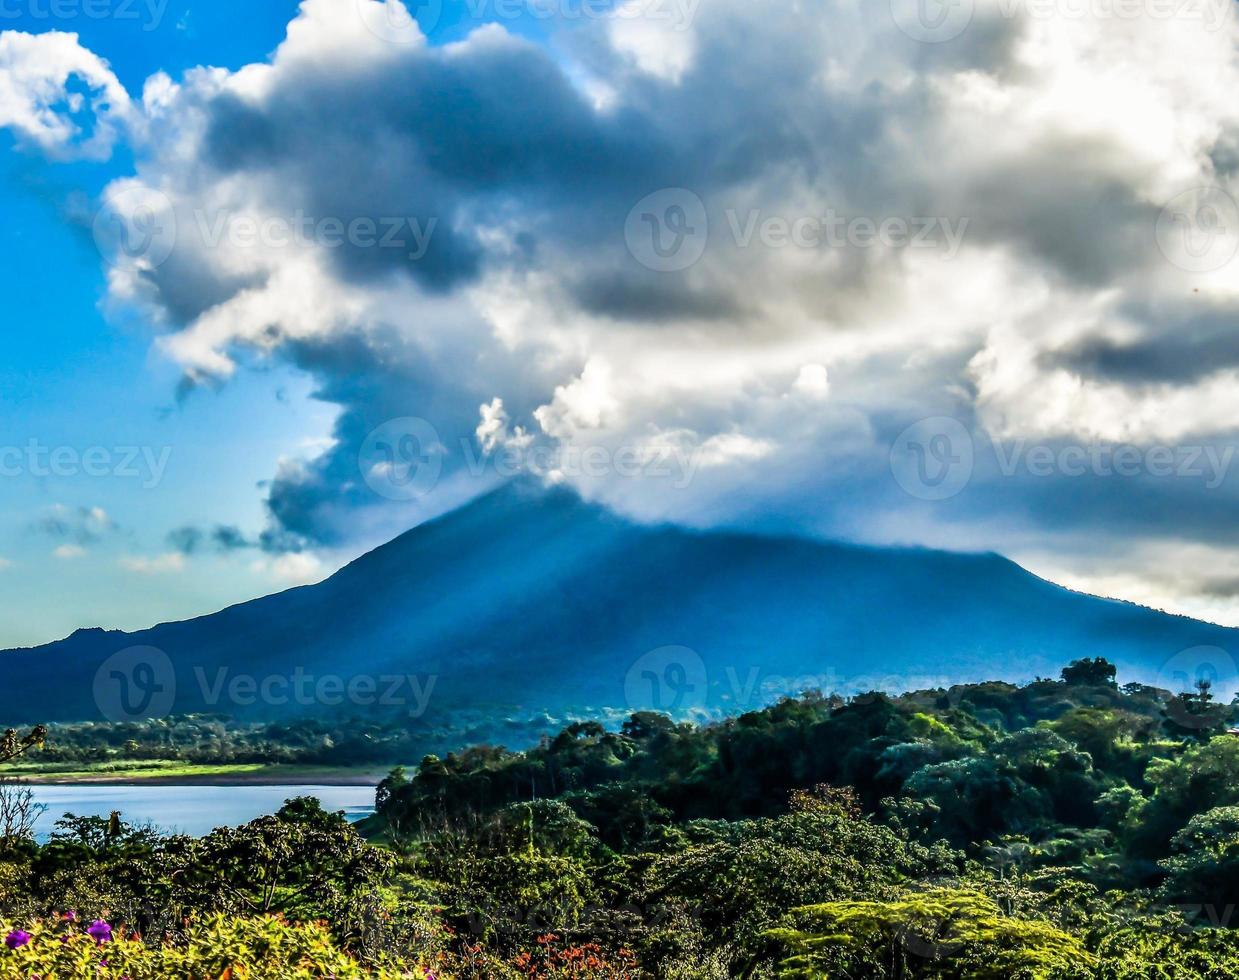 Costa Rica Landscape photo